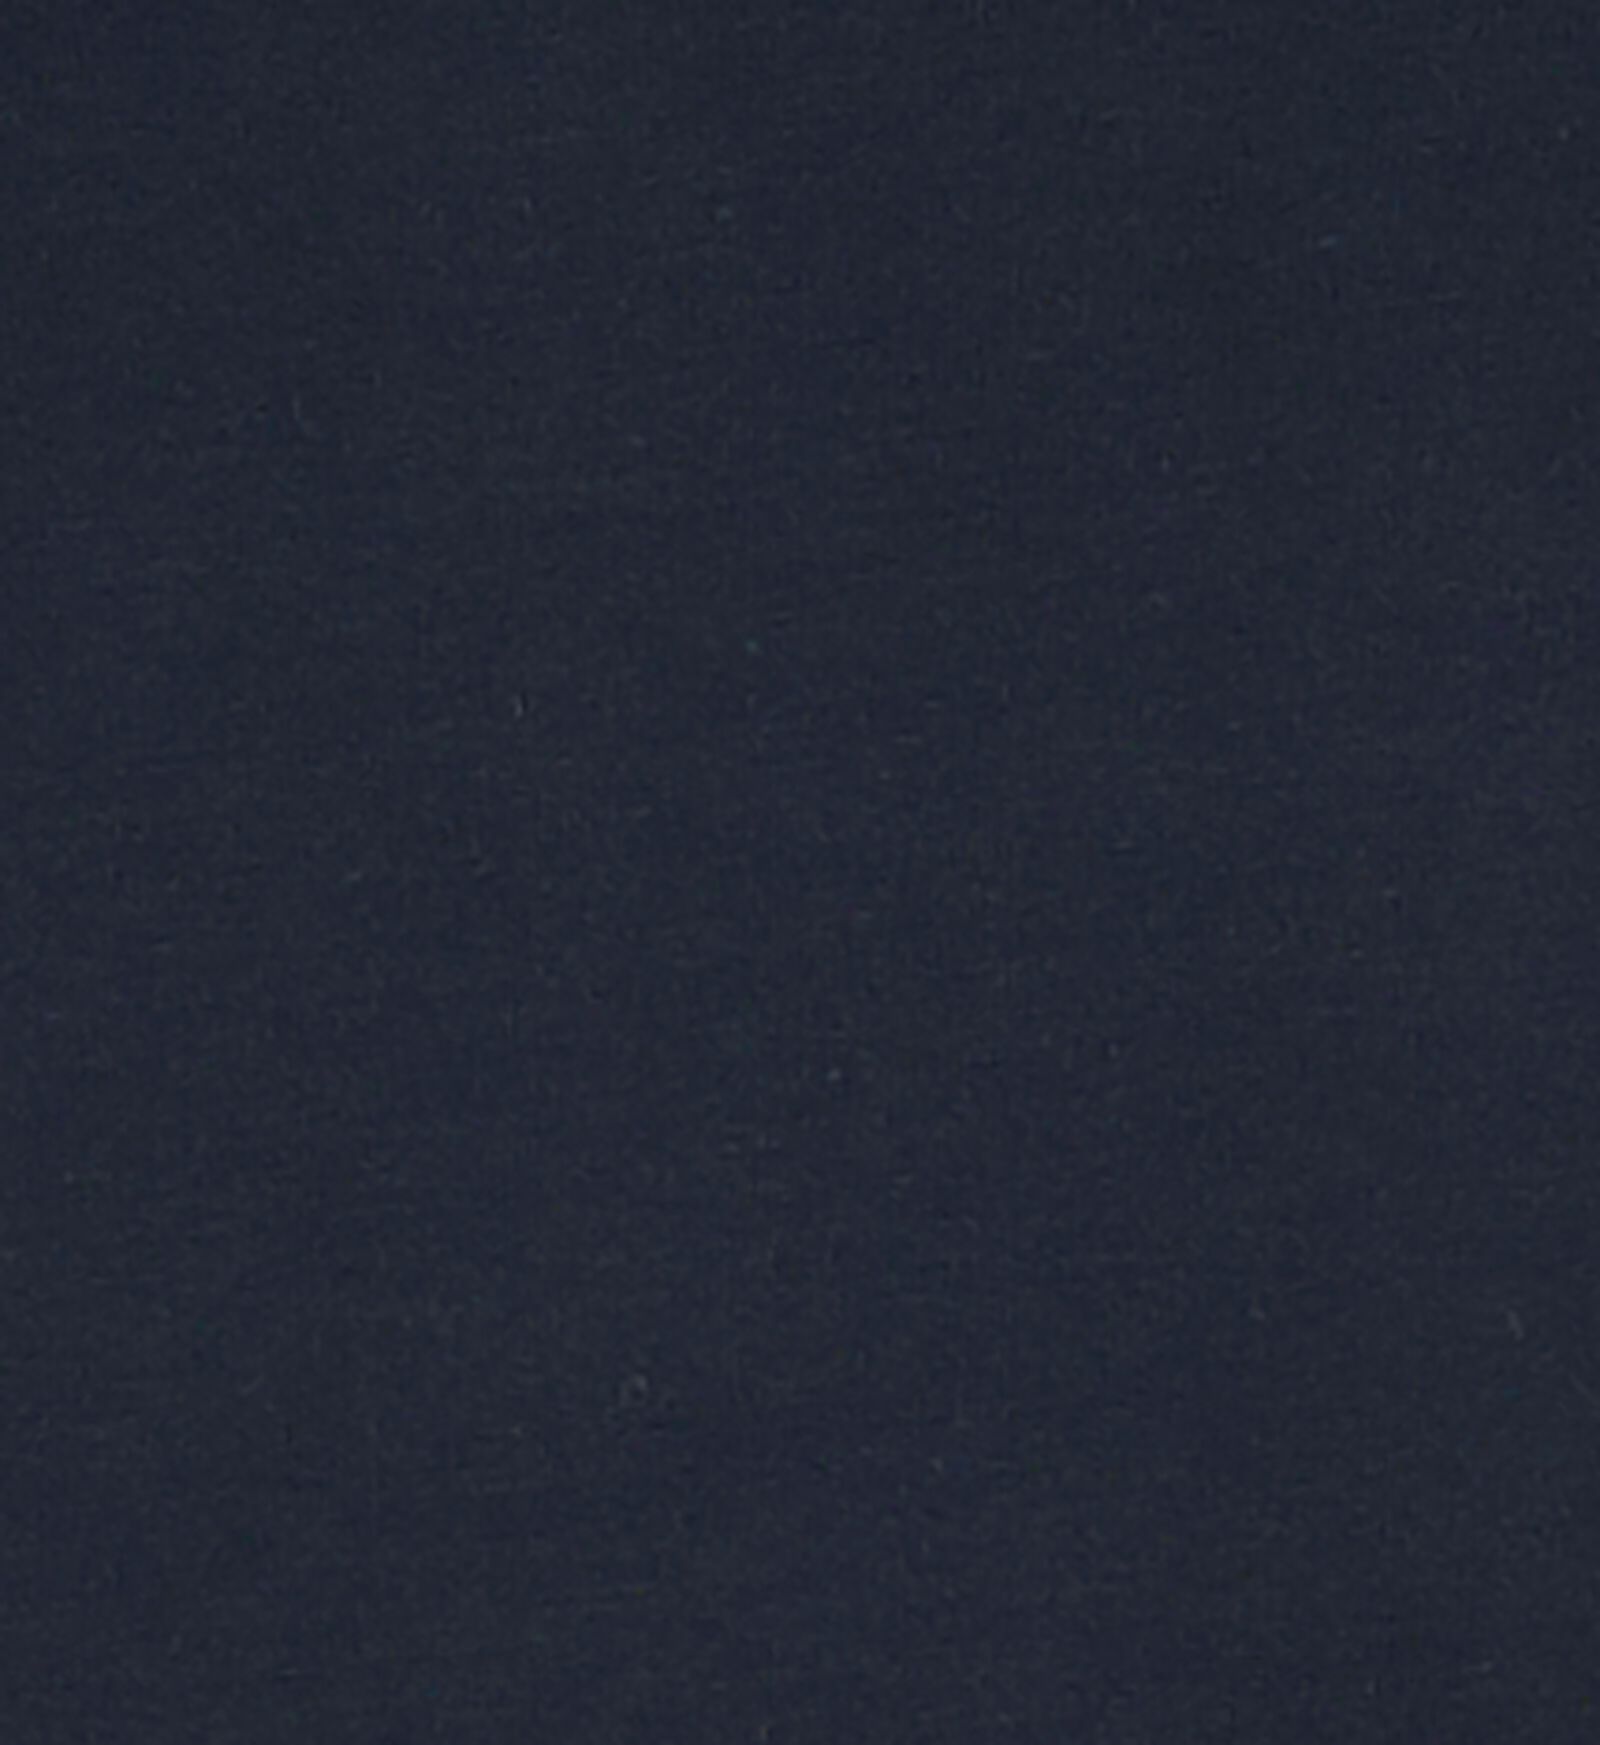 Damen-Hemd dunkelblau L - 19604034 - HEMA